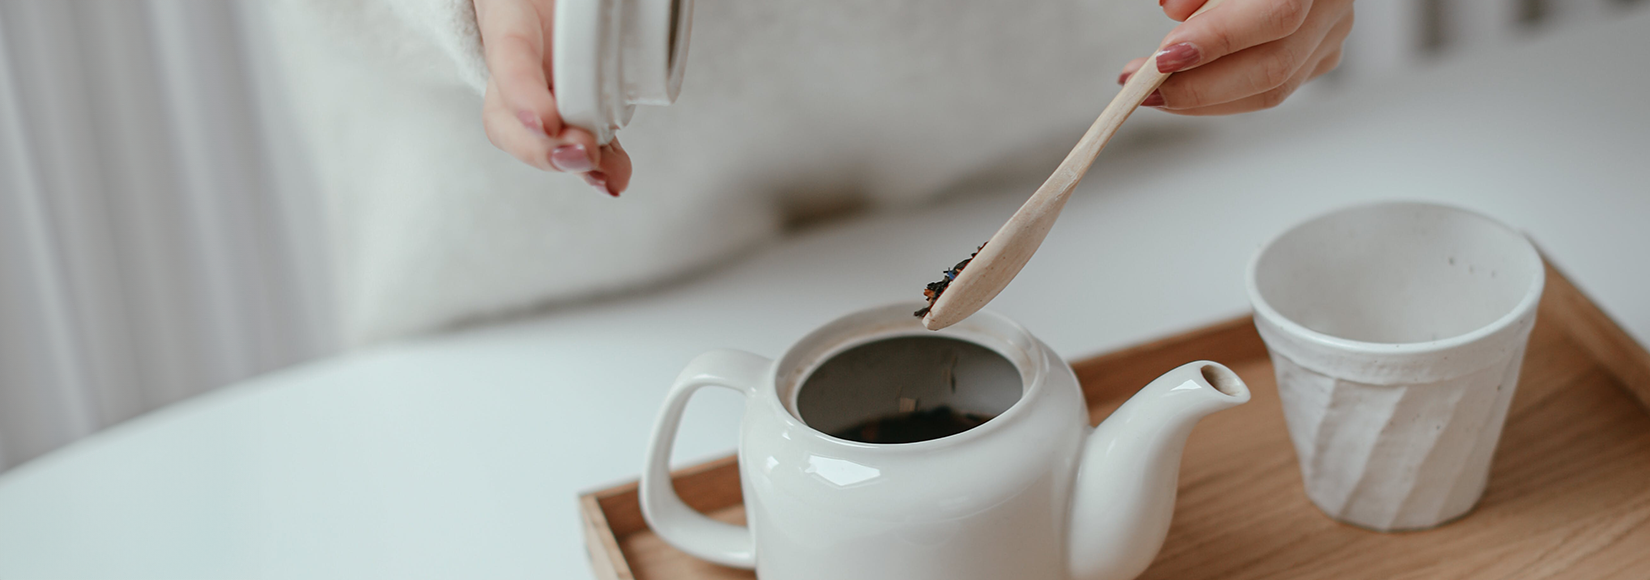 White porcelain teapot with white mug